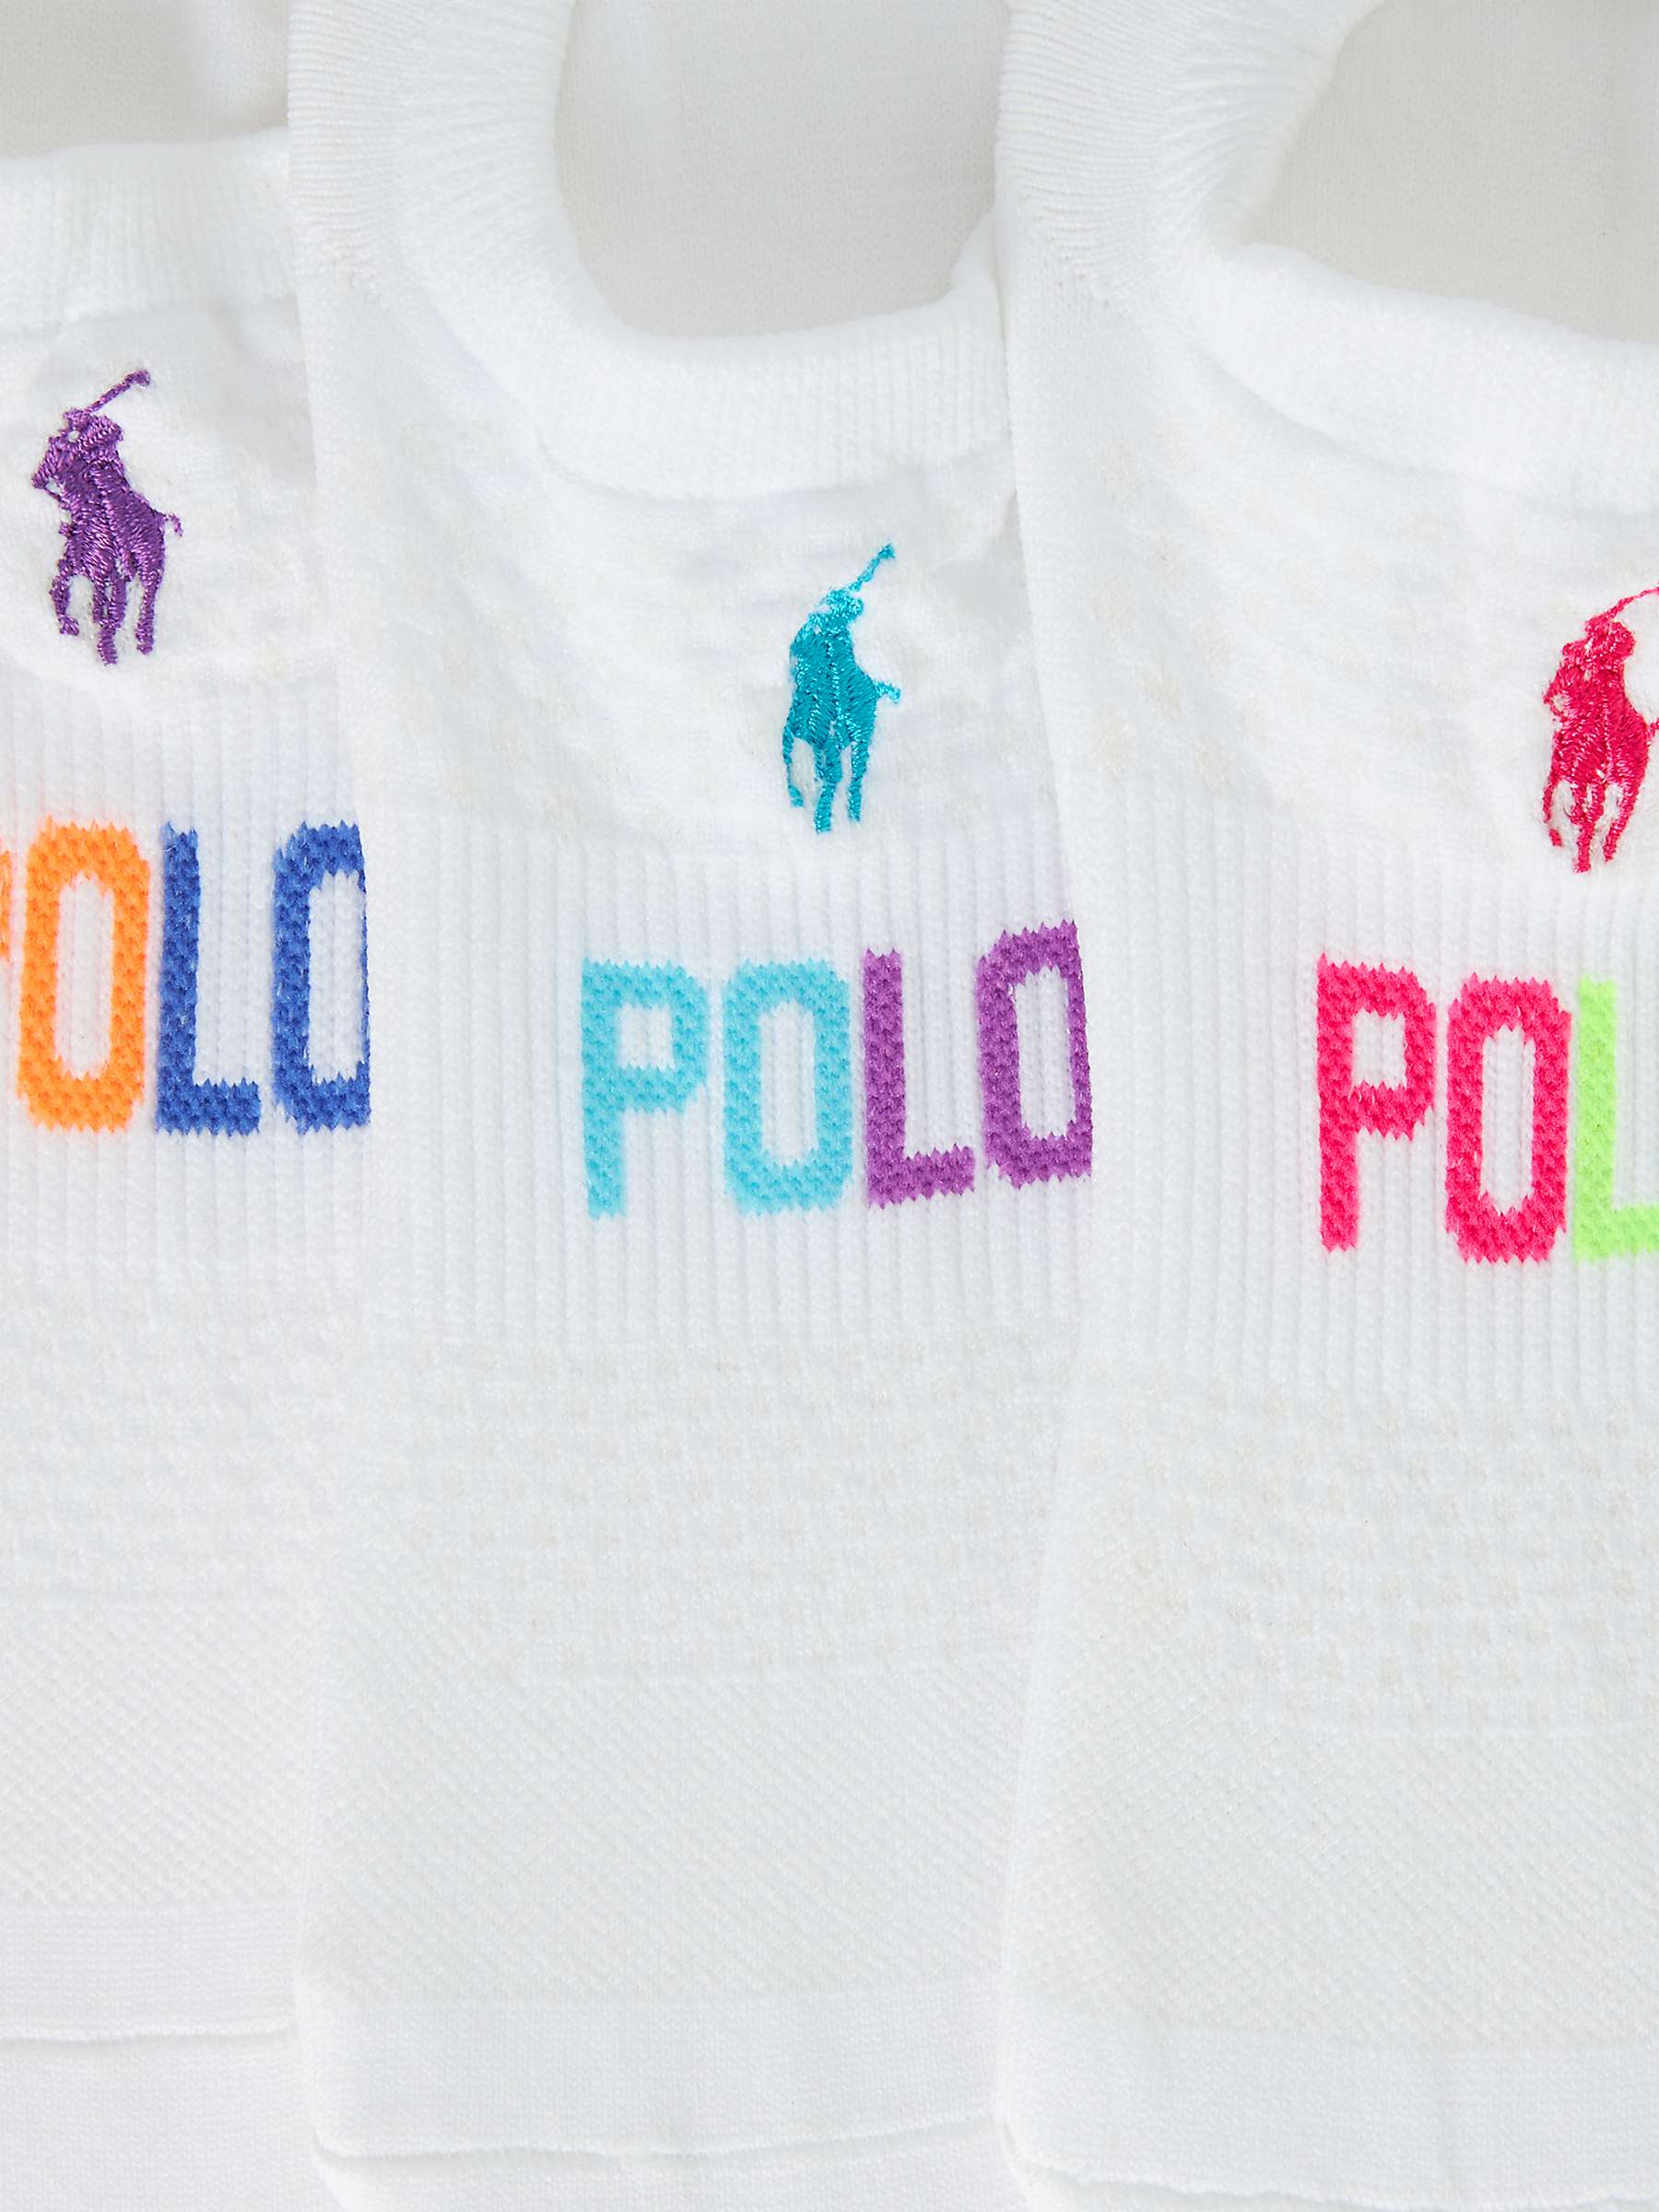 Buy Polo Ralph Lauren High Cut Mesh Liner Socks, Pack of 3, White/Multi Online at johnlewis.com